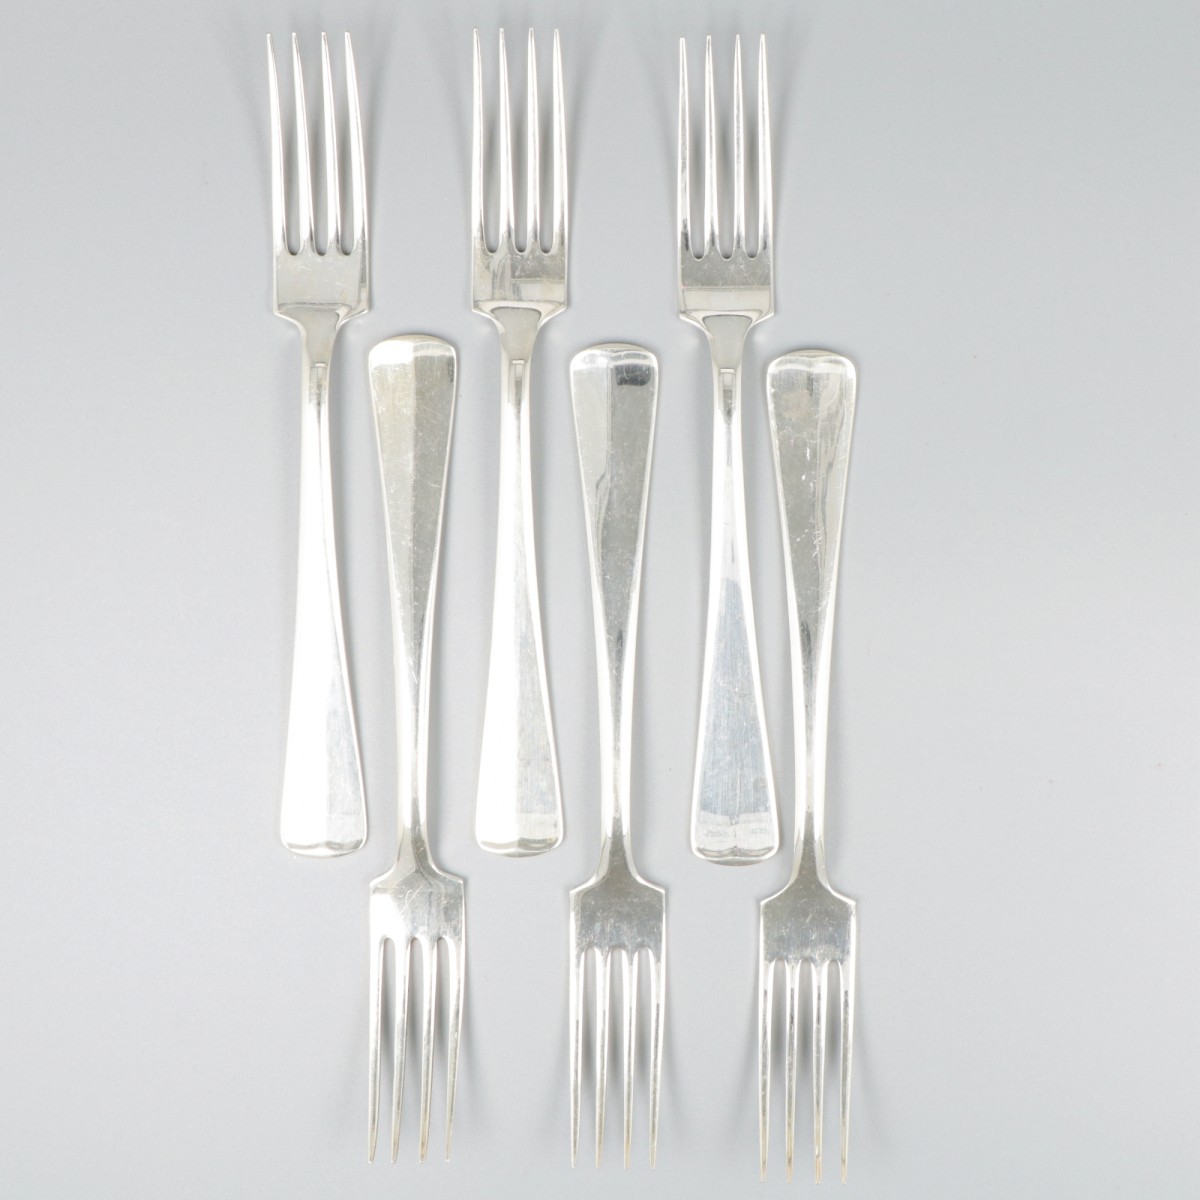 6-delige set vorken Haags lofje zilver.